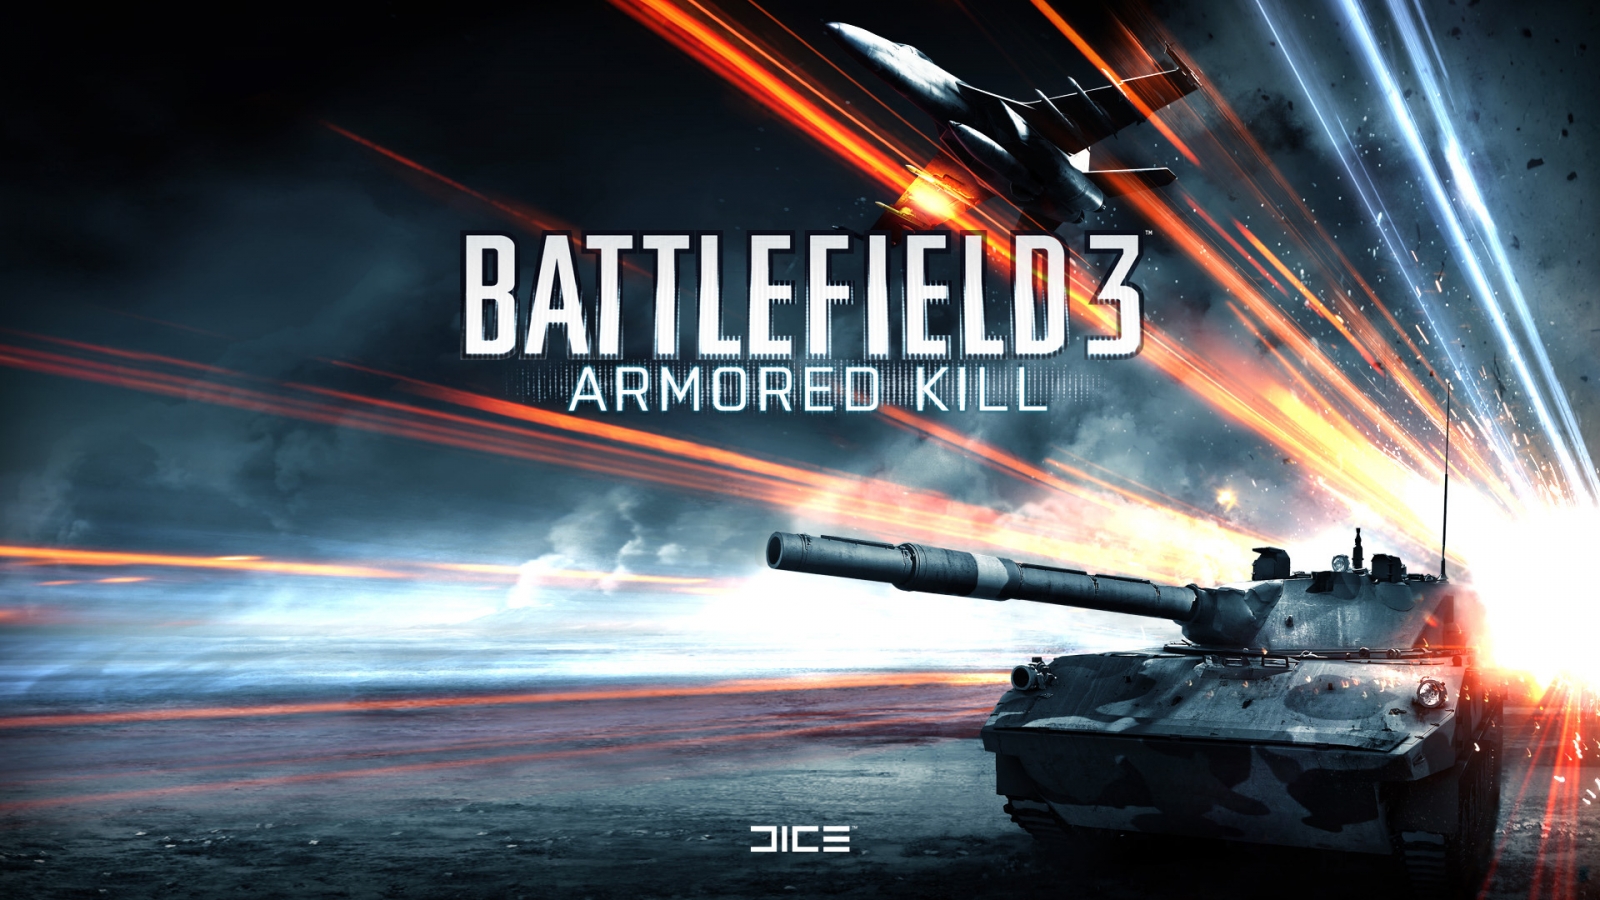 Battlefield 3 Armored Kill for 1600 x 900 HDTV resolution